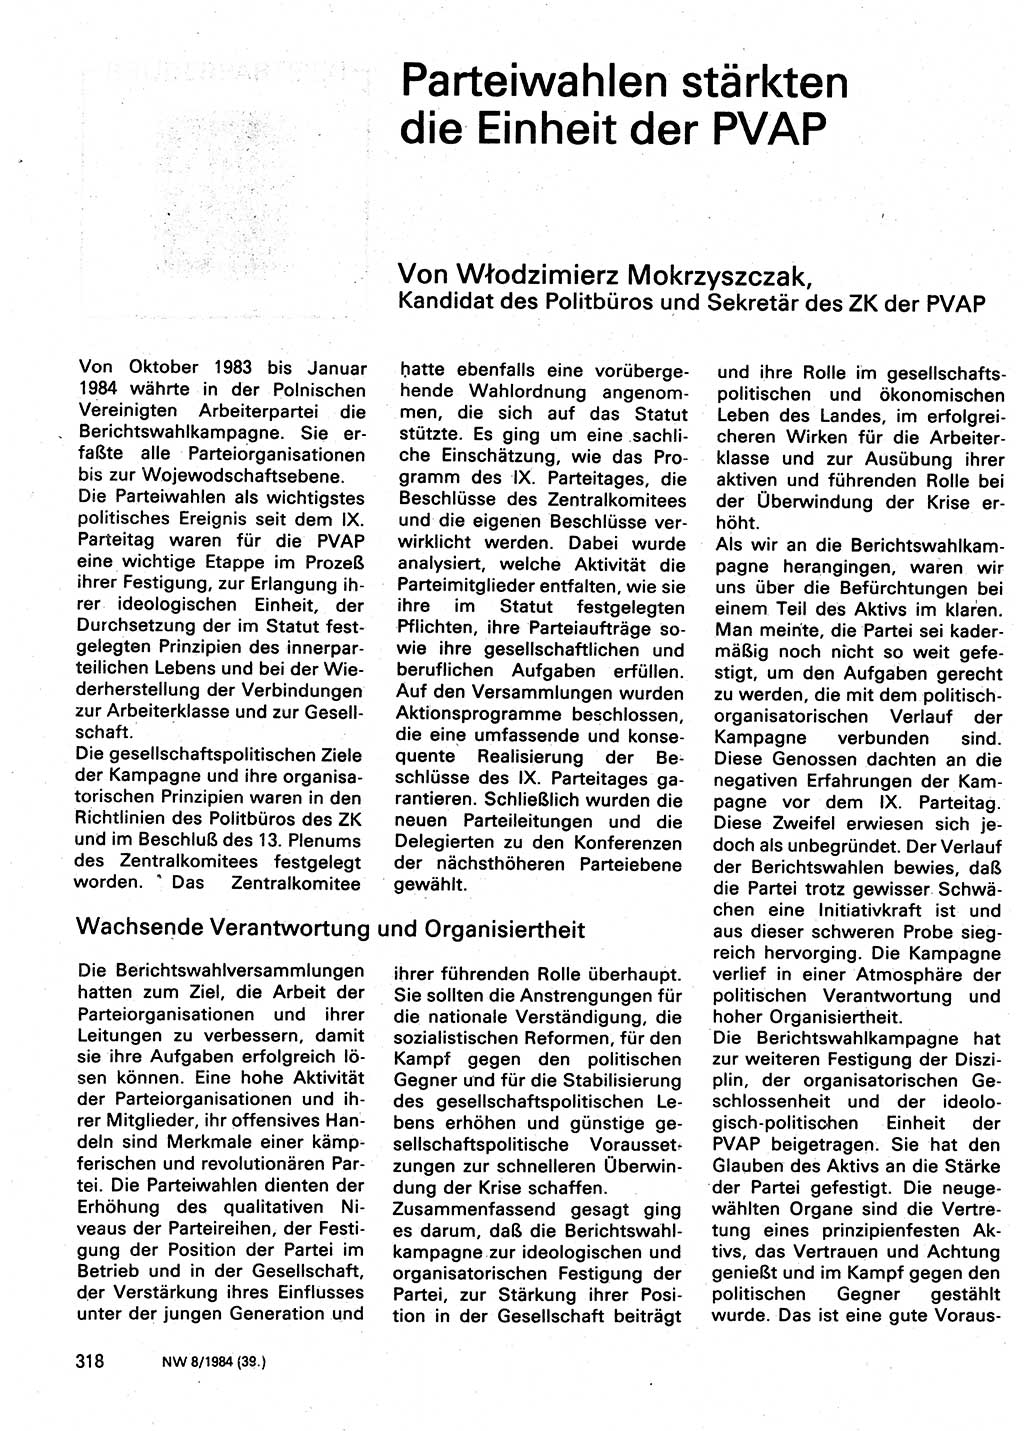 Neuer Weg (NW), Organ des Zentralkomitees (ZK) der SED (Sozialistische Einheitspartei Deutschlands) für Fragen des Parteilebens, 39. Jahrgang [Deutsche Demokratische Republik (DDR)] 1984, Seite 318 (NW ZK SED DDR 1984, S. 318)